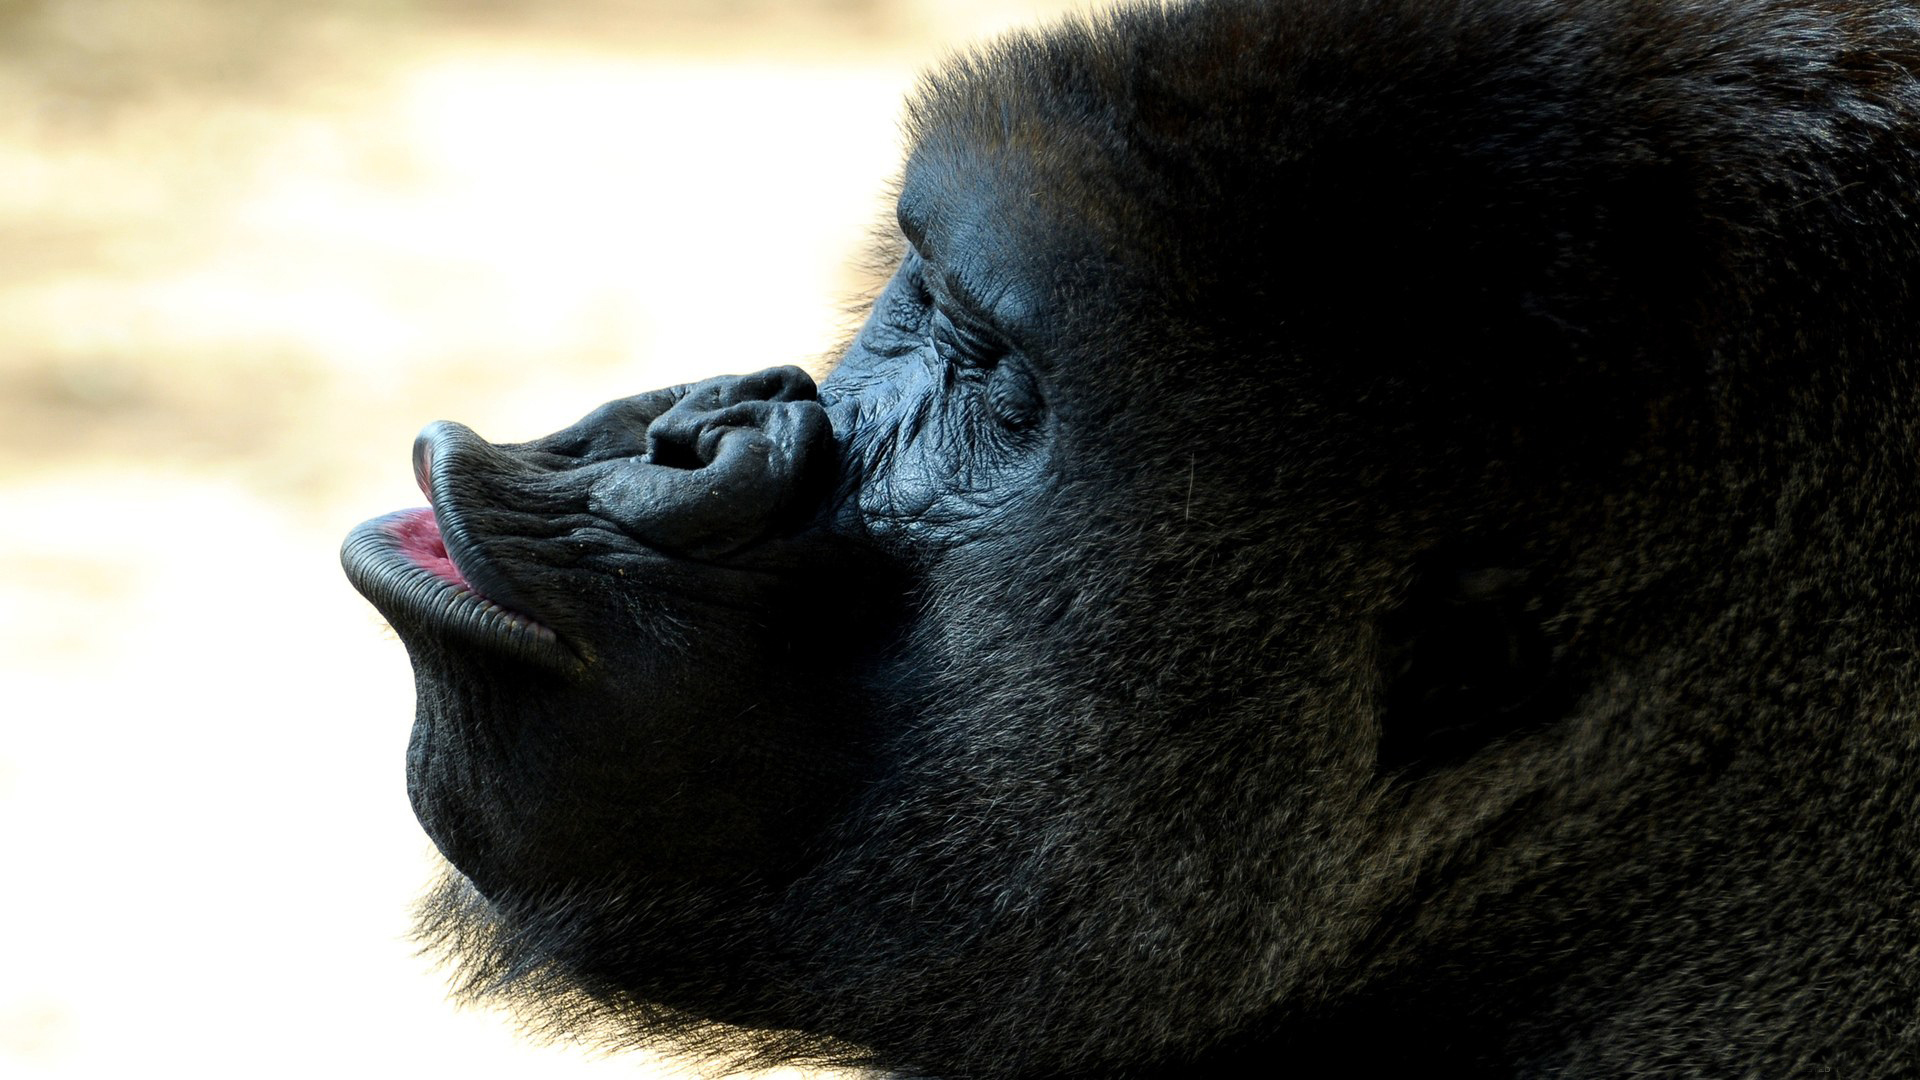 Full HD Wallpaper animal, gorilla